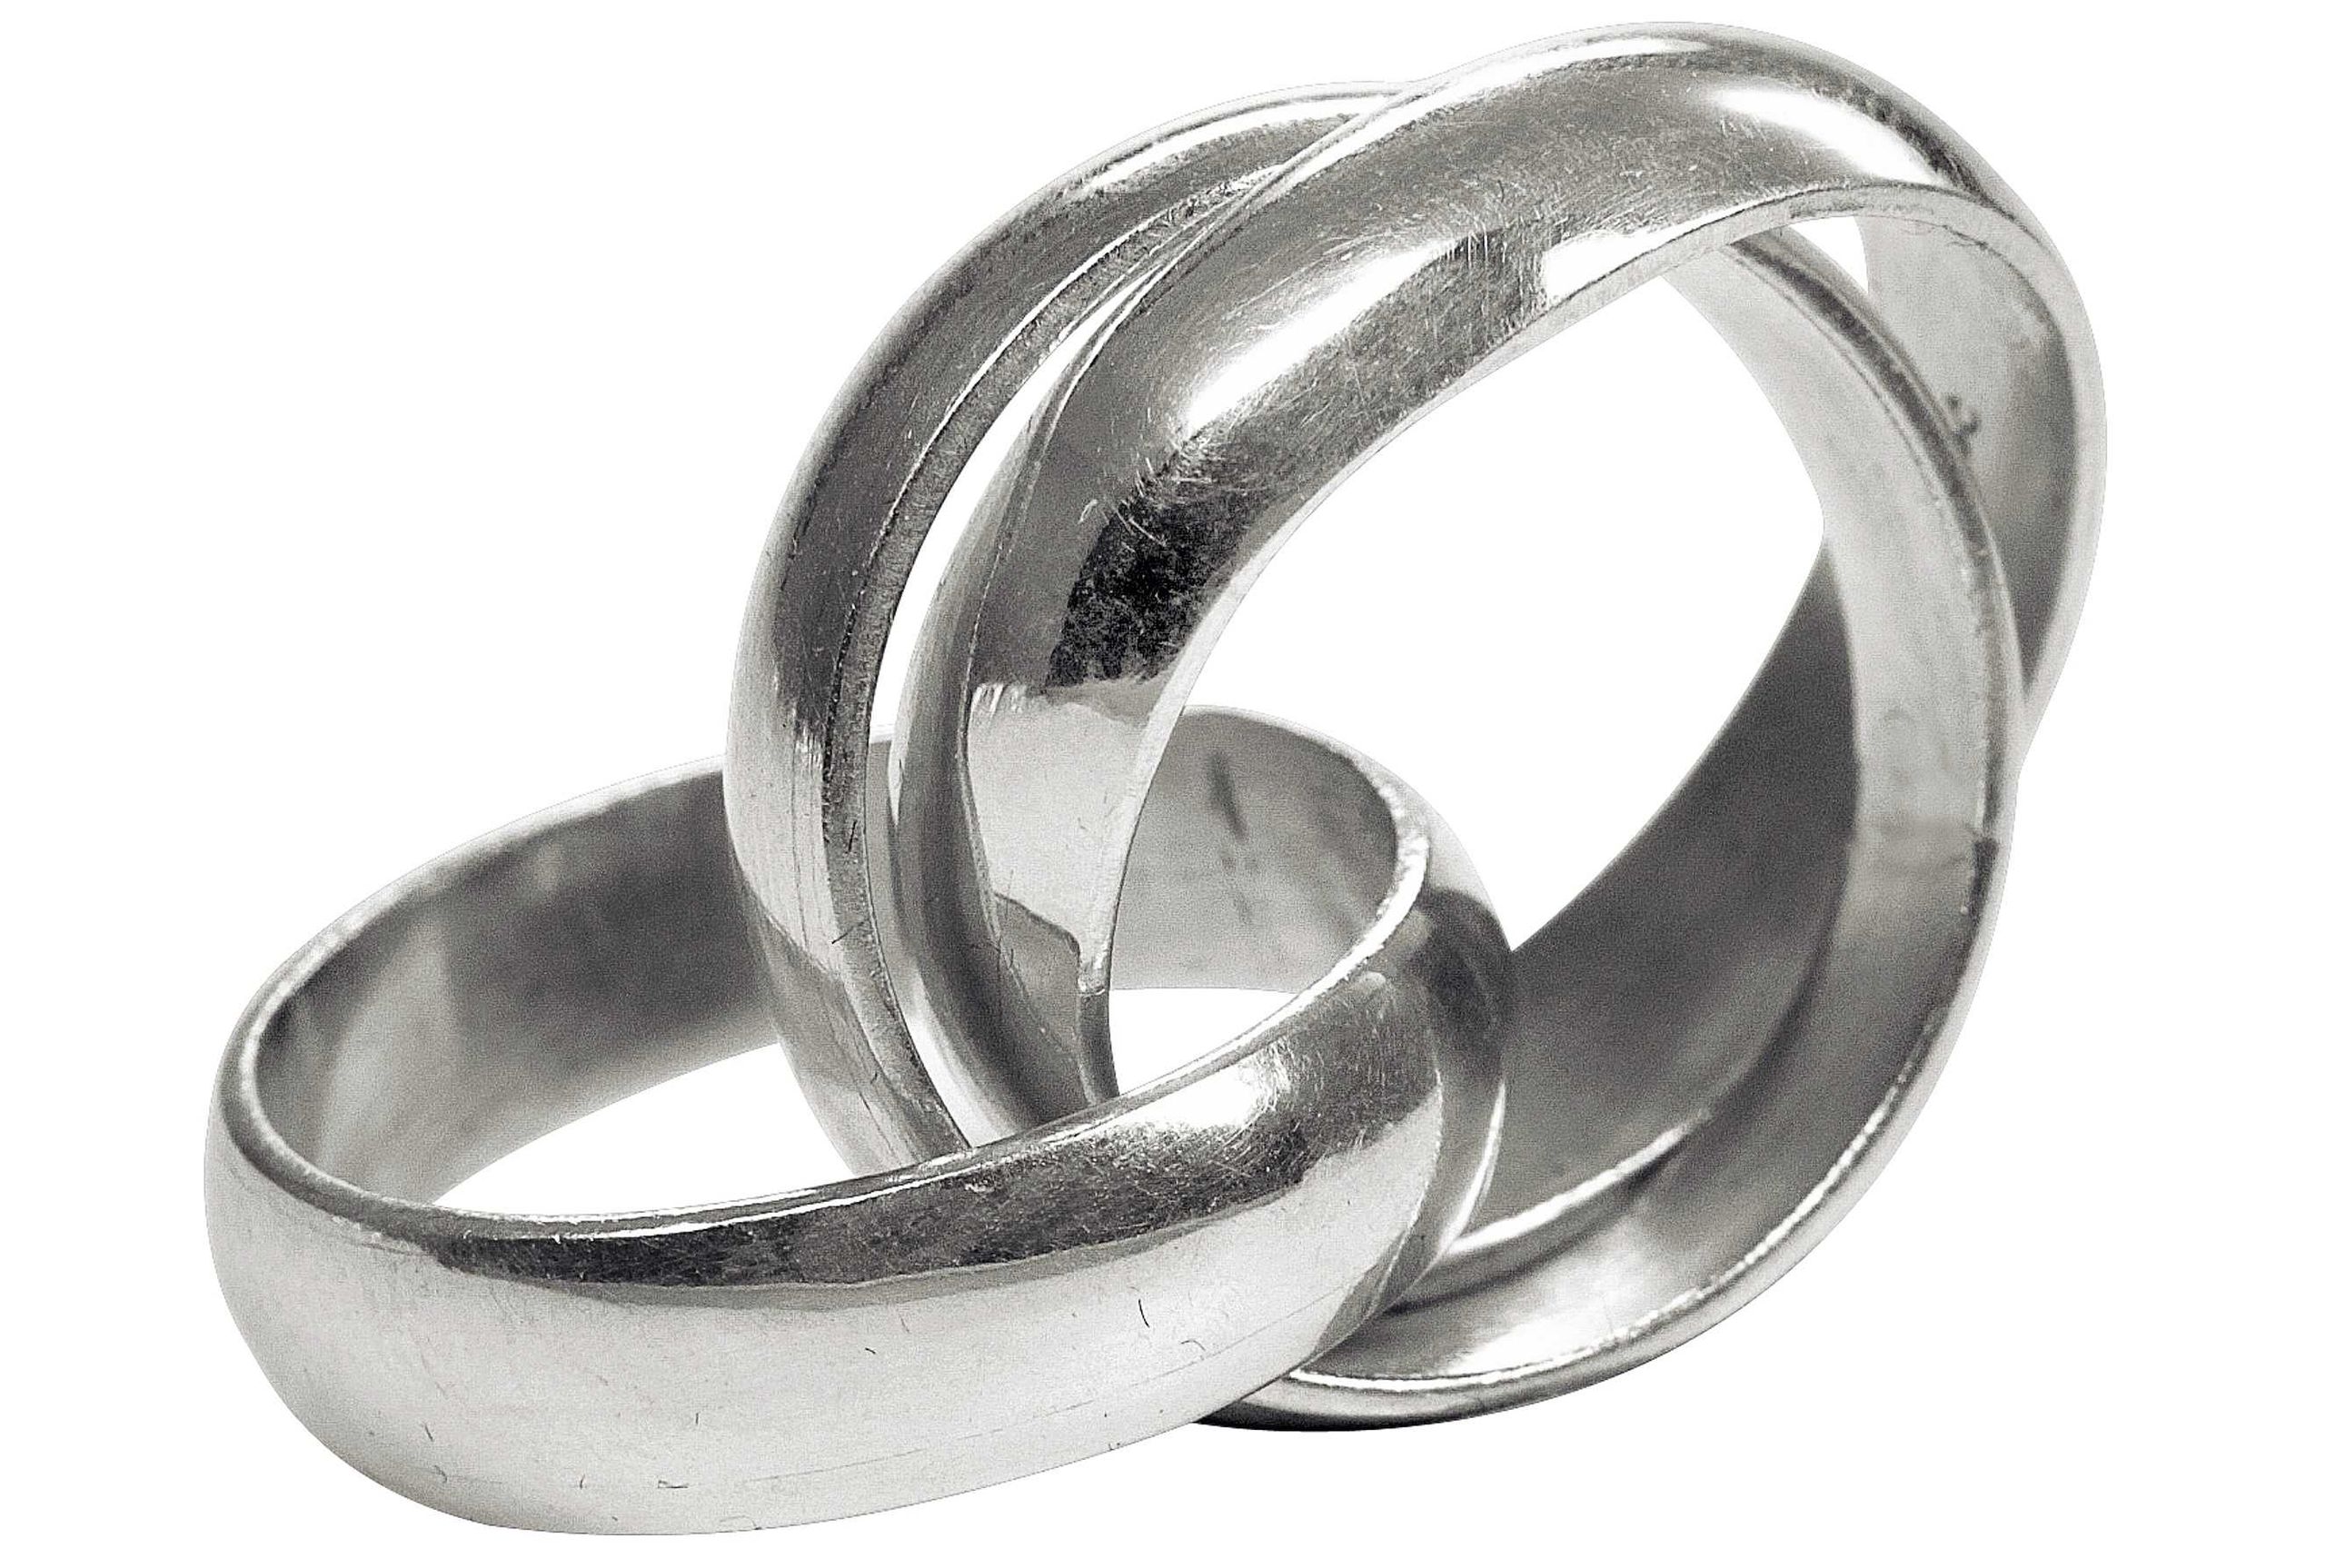 Geschmiedeter Dreierring für Damen aus Silber mit glänzender Oberfläche. Die drei einzelnen Ringe sind frei beweglich, aber unverlierbar miteinander verbunden.